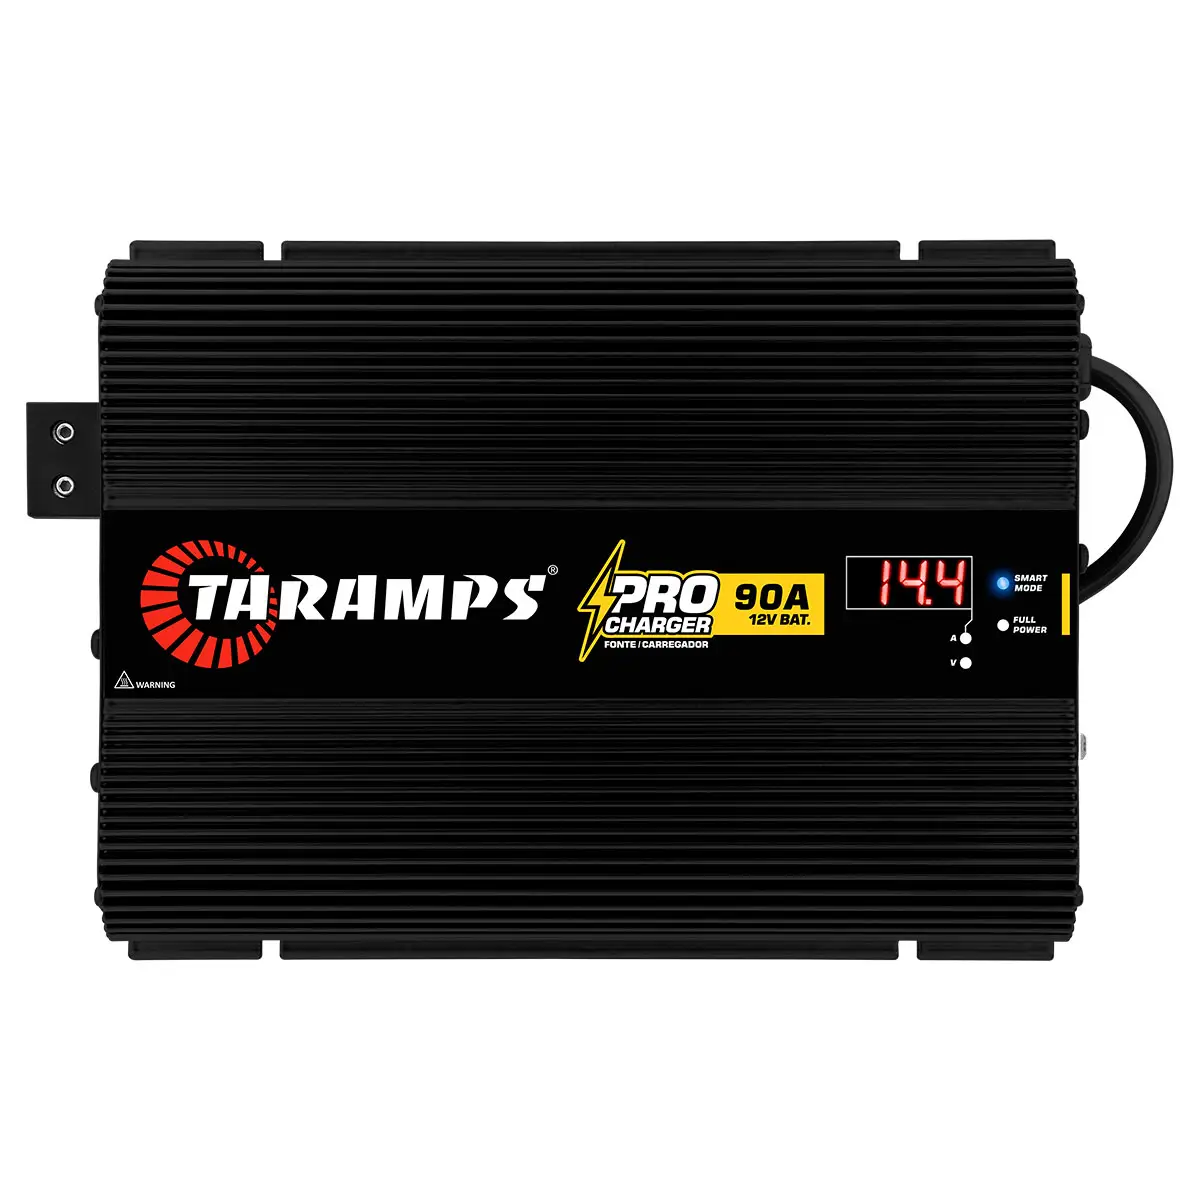 Taramps Pro Charger 90A Fuente de alimentación Bivolt Automático 127V/220V AC Cargador de batería 1300W Potencia de salida 90A Modo dinámico